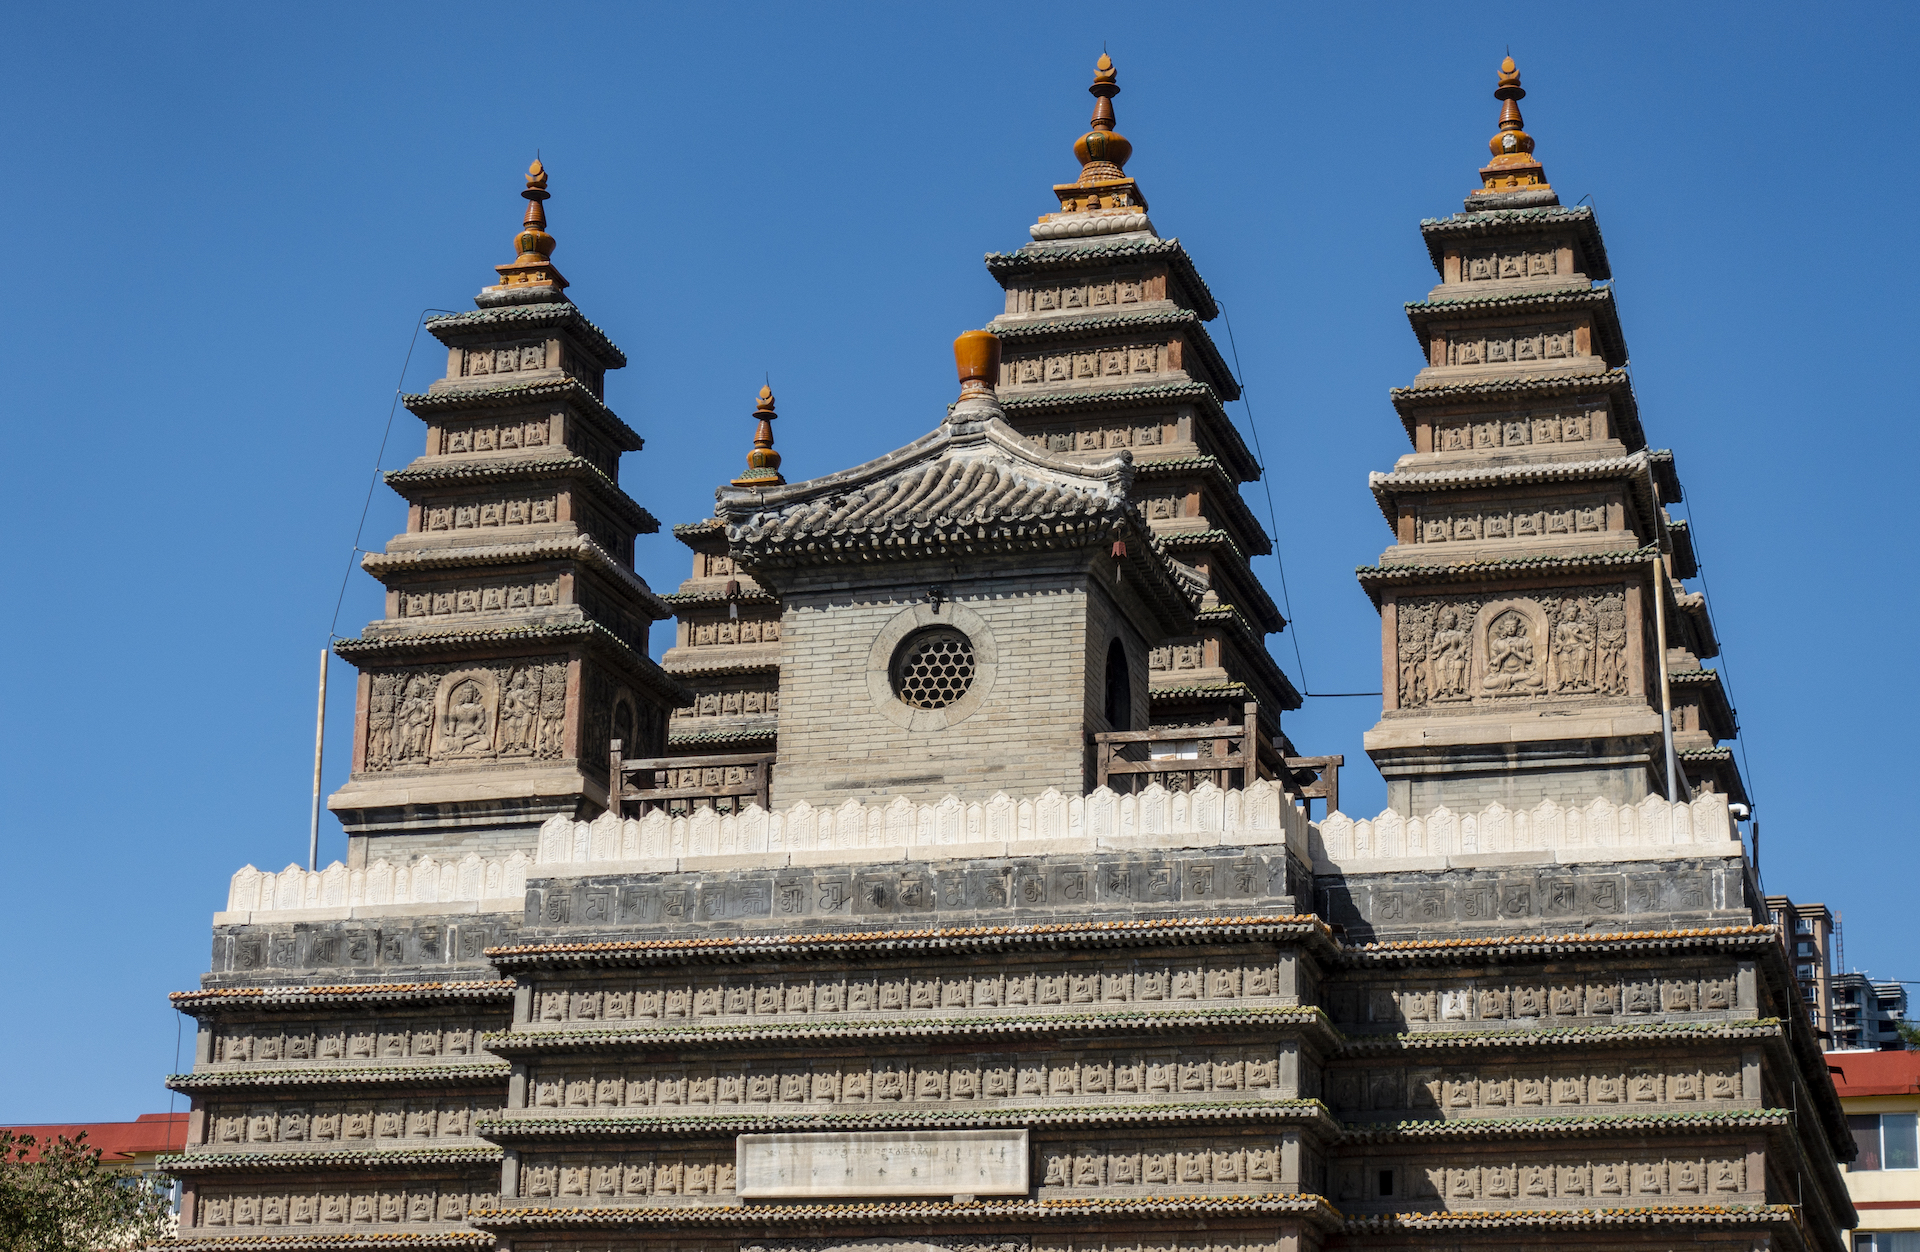 不只北京,呼和浩特也有座五塔寺,建于清代,塔里还有个神秘宝贝